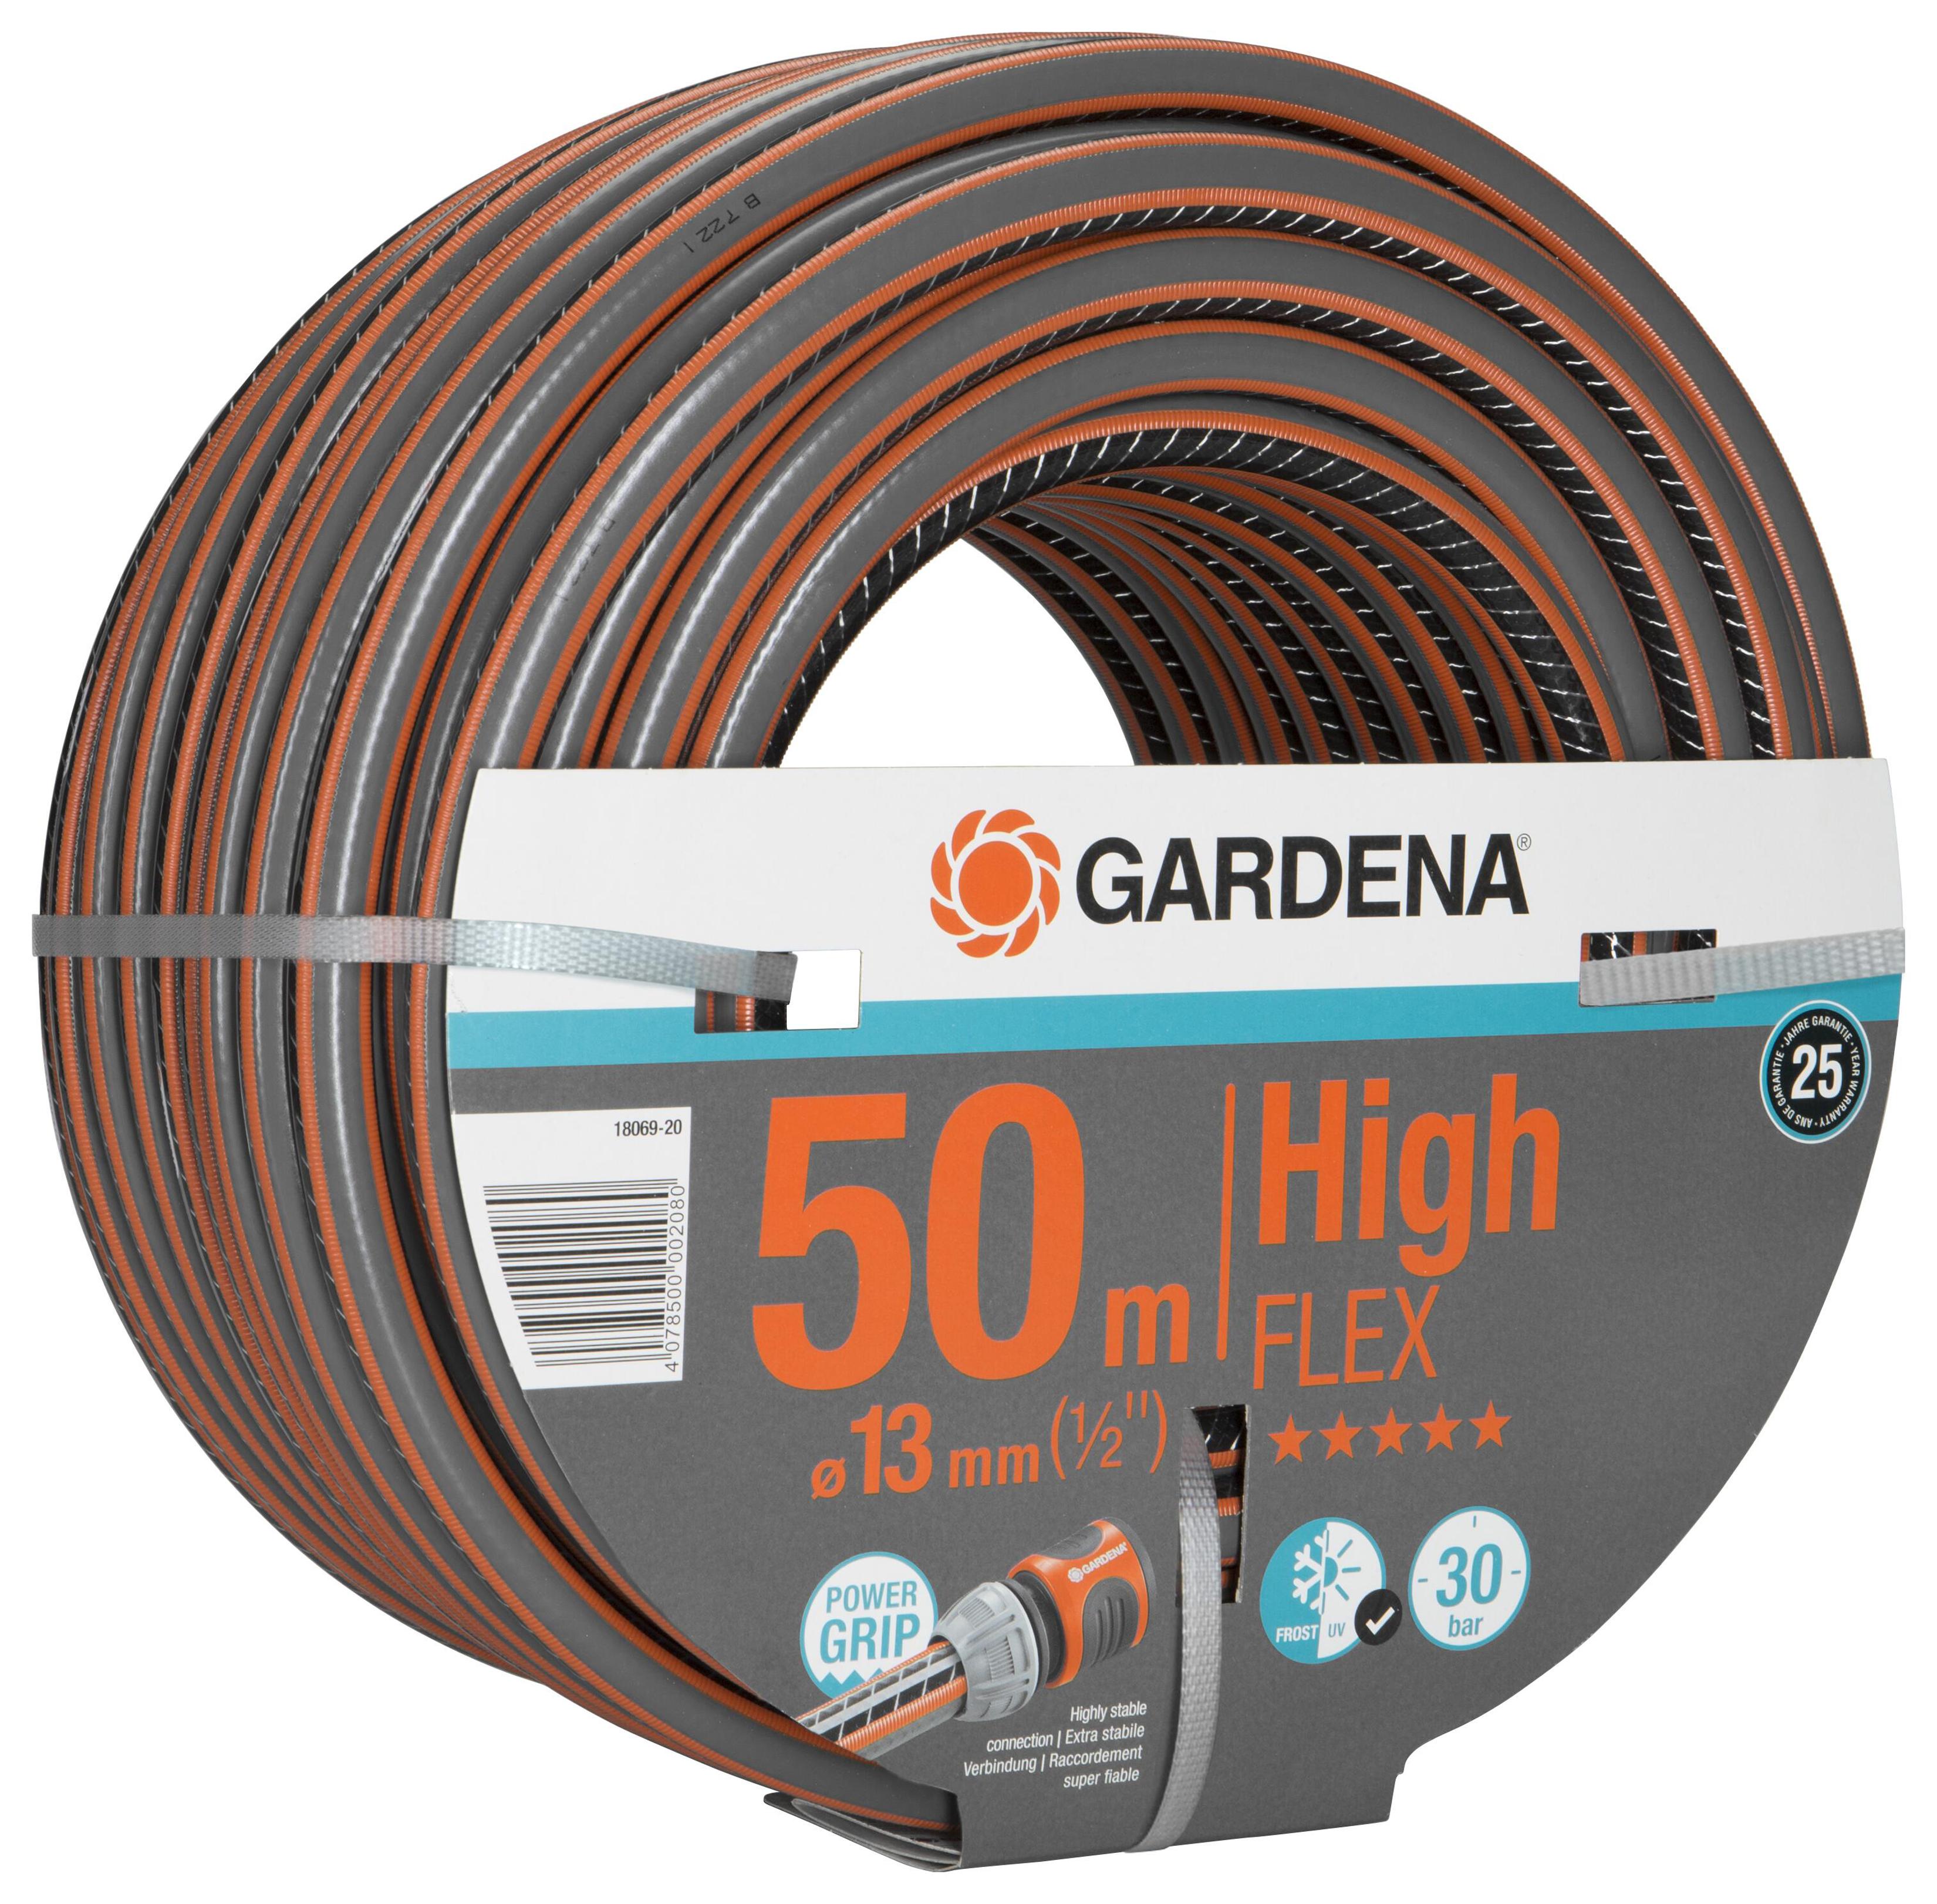 Gardena - Comfort HighFLEX Hose 13 mm 50m thumbnail-1